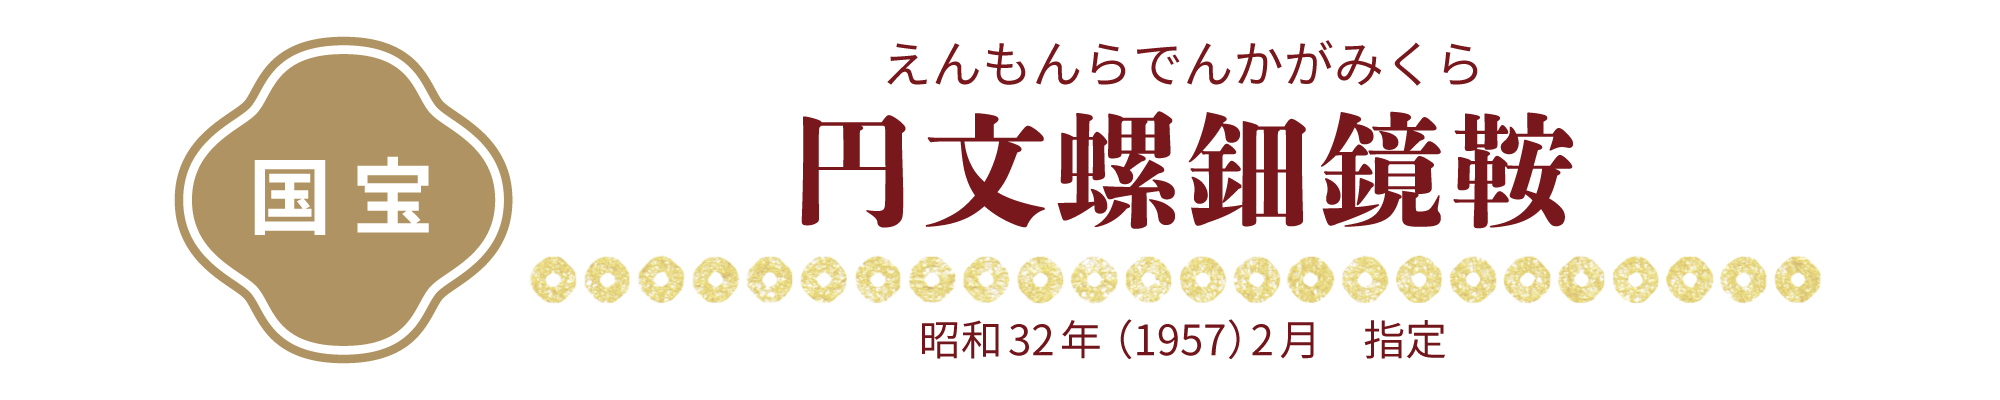 【国宝】円文螺鈿鏡鞍 えんもんらでんかがみくら,昭和32年（1957）2月　指定